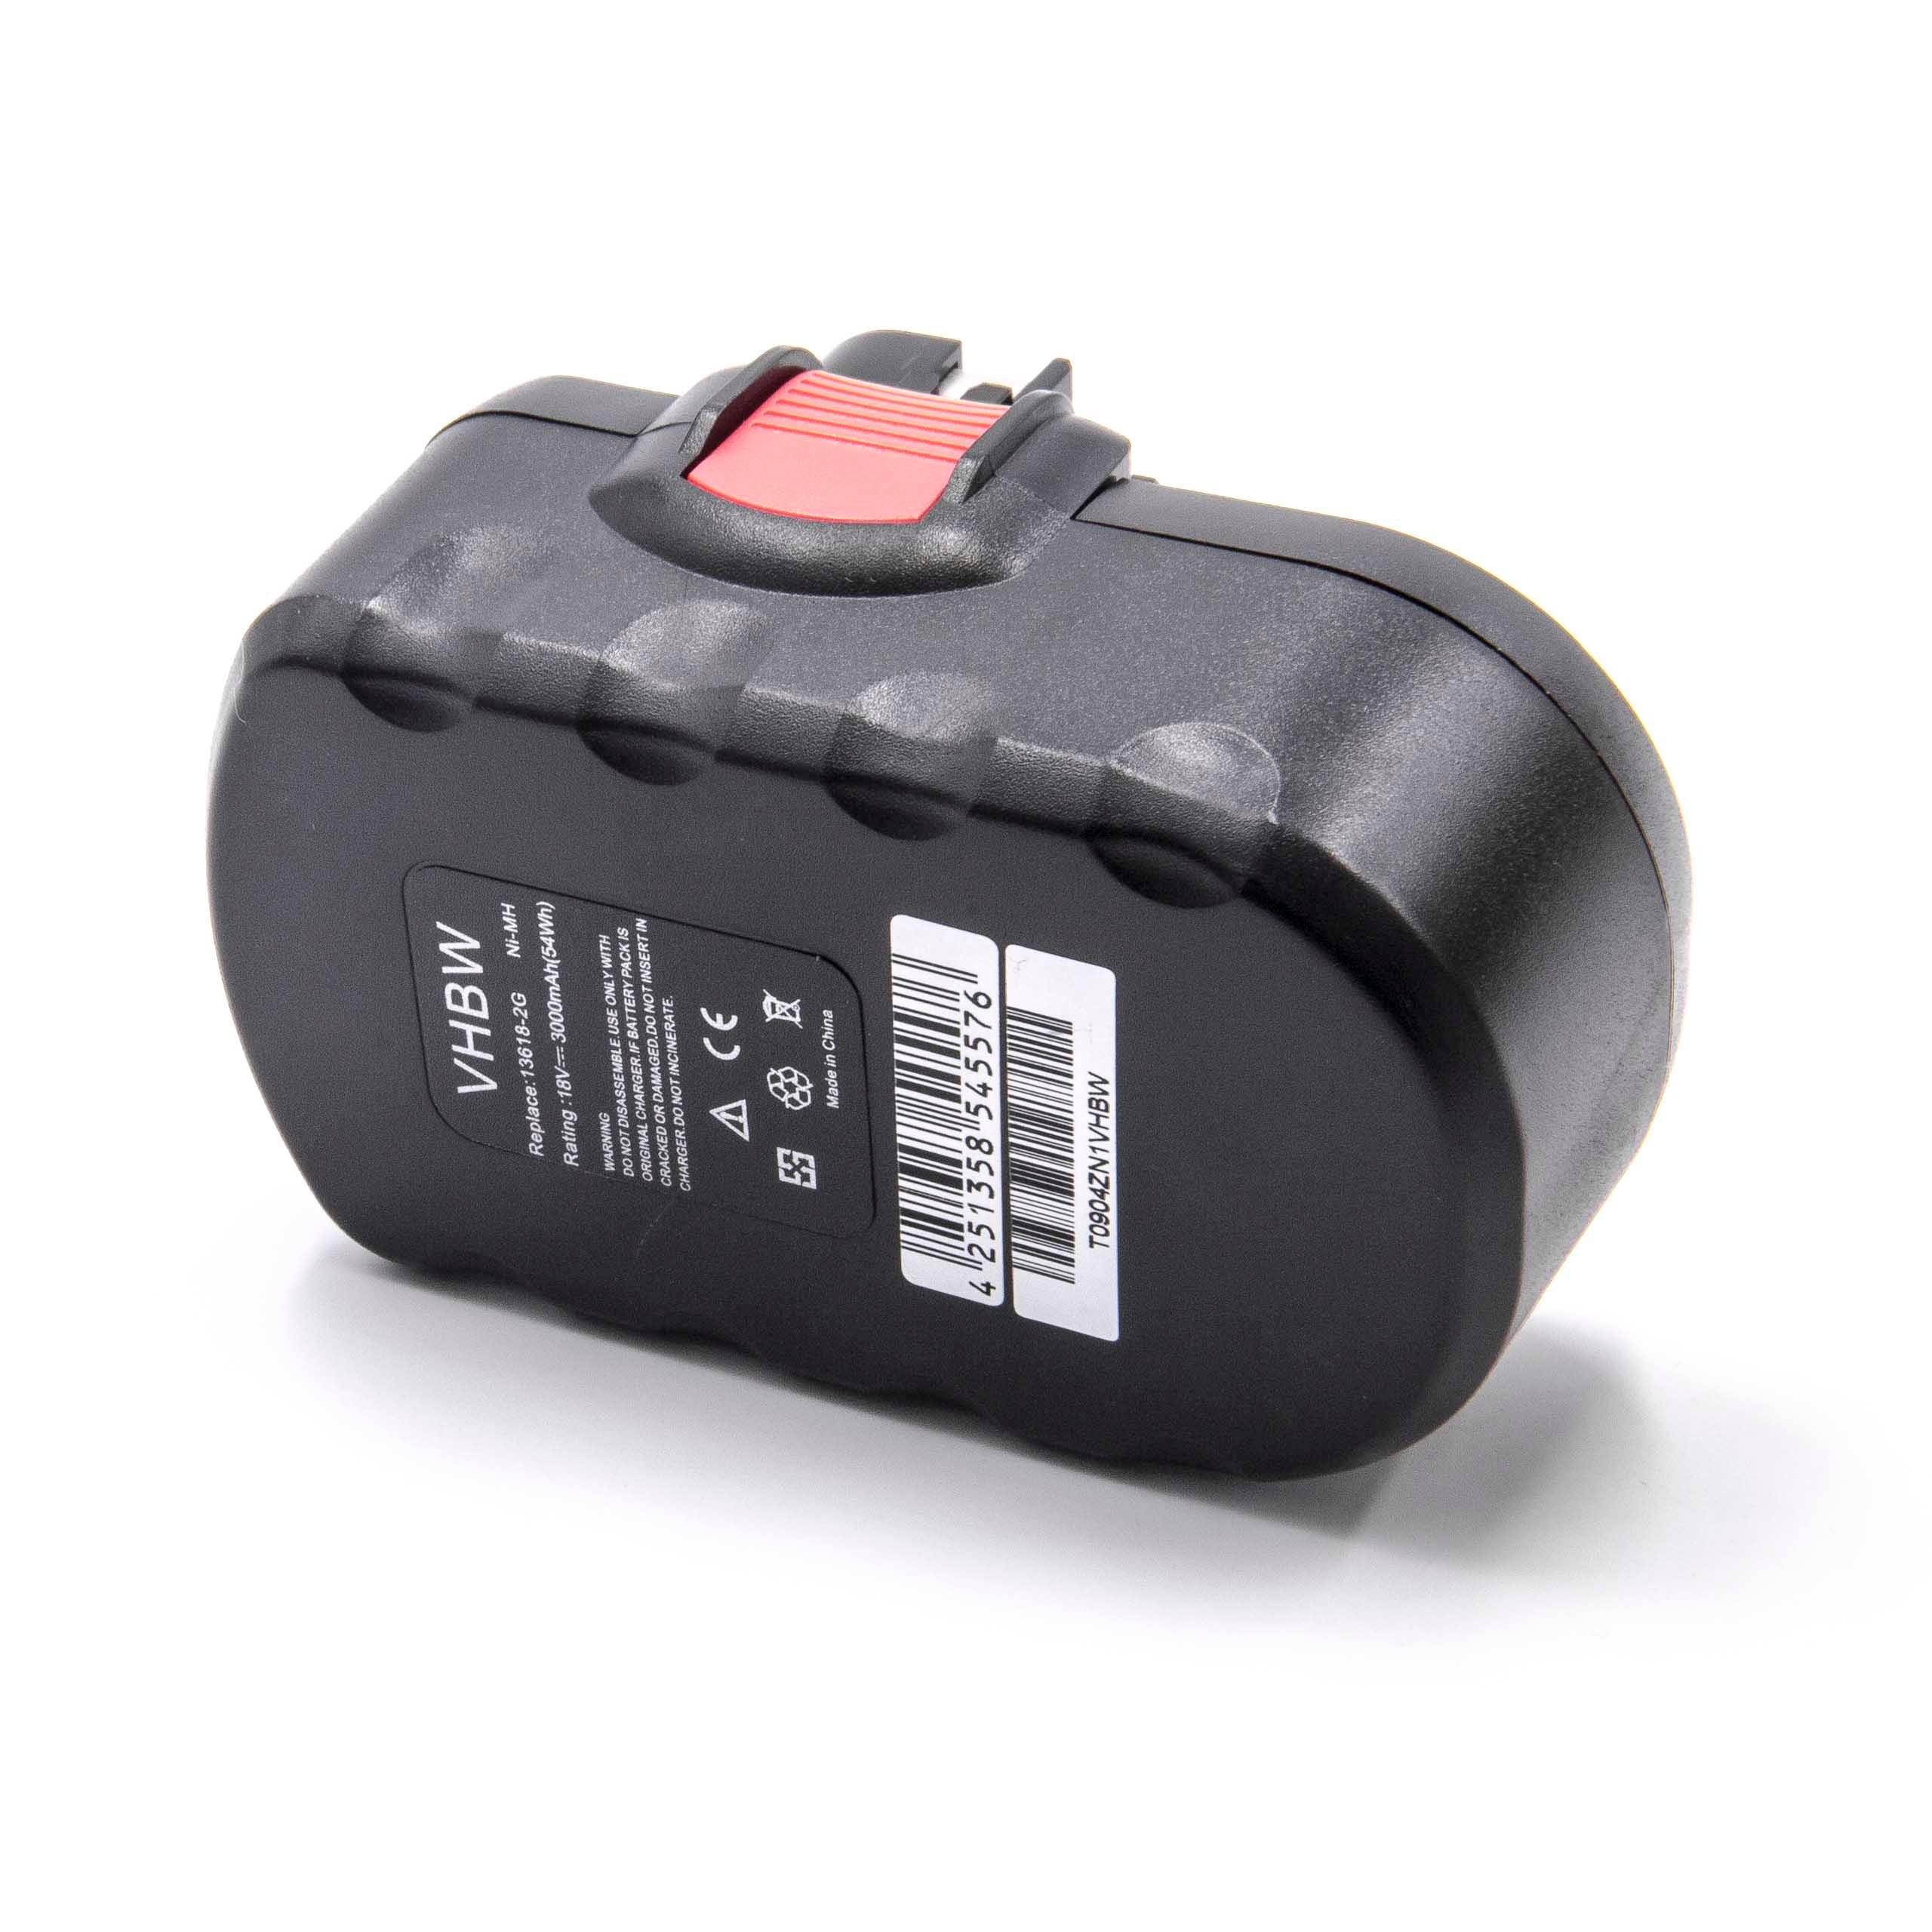 Batterie remplace Bosch 2 607 335 278, 2 607 335 266 pour outil électrique - 3000 mAh, 18 V, NiMH